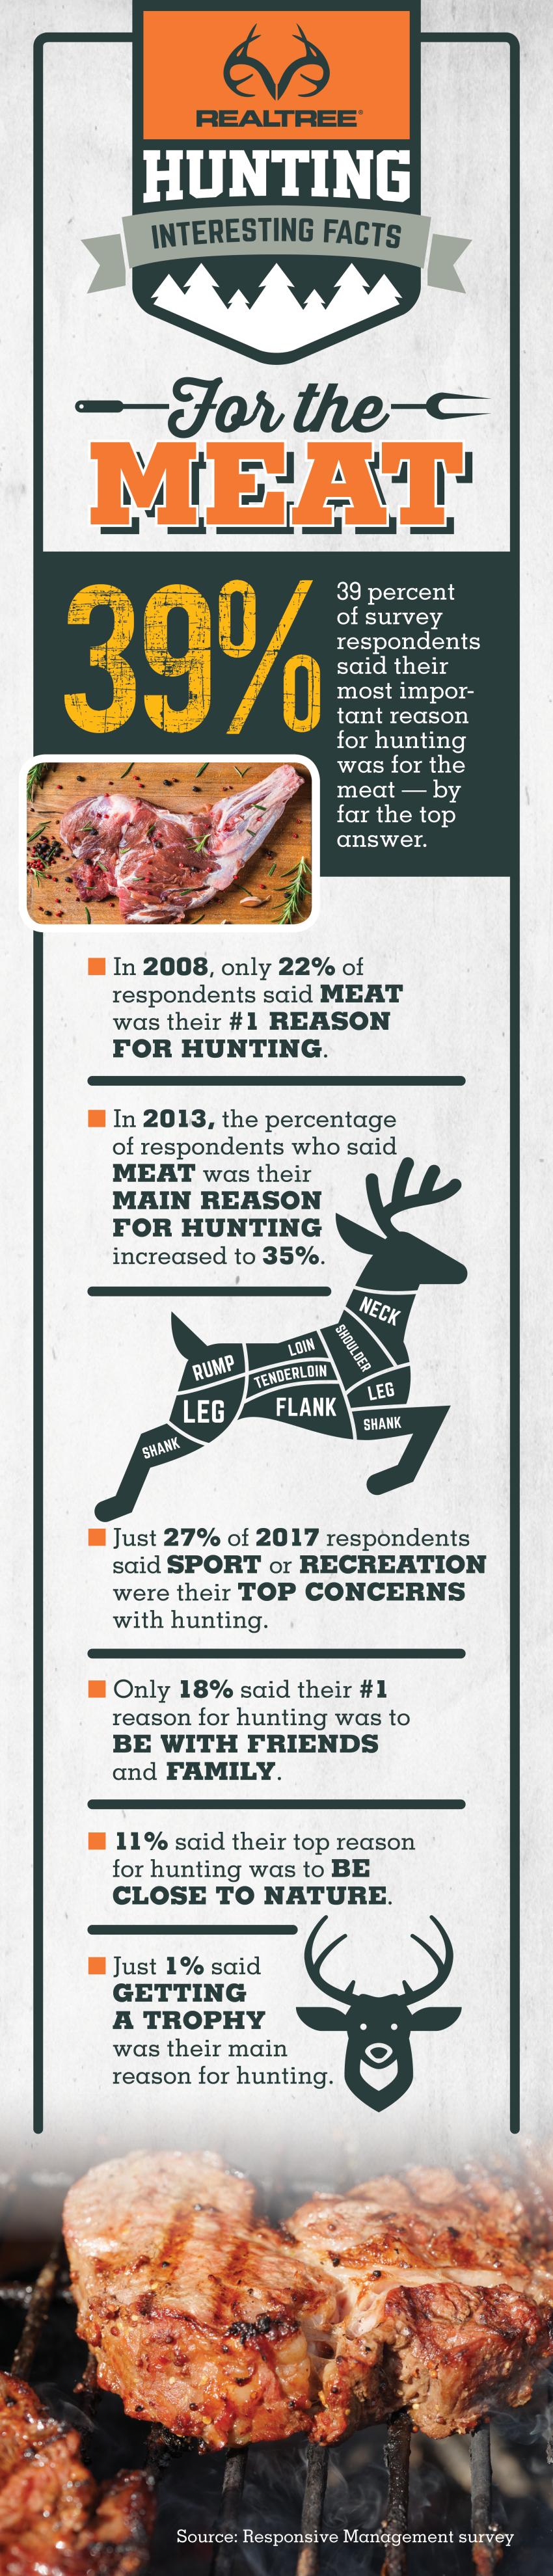 Top Reason for Hunting 2017 | Realtree B2B